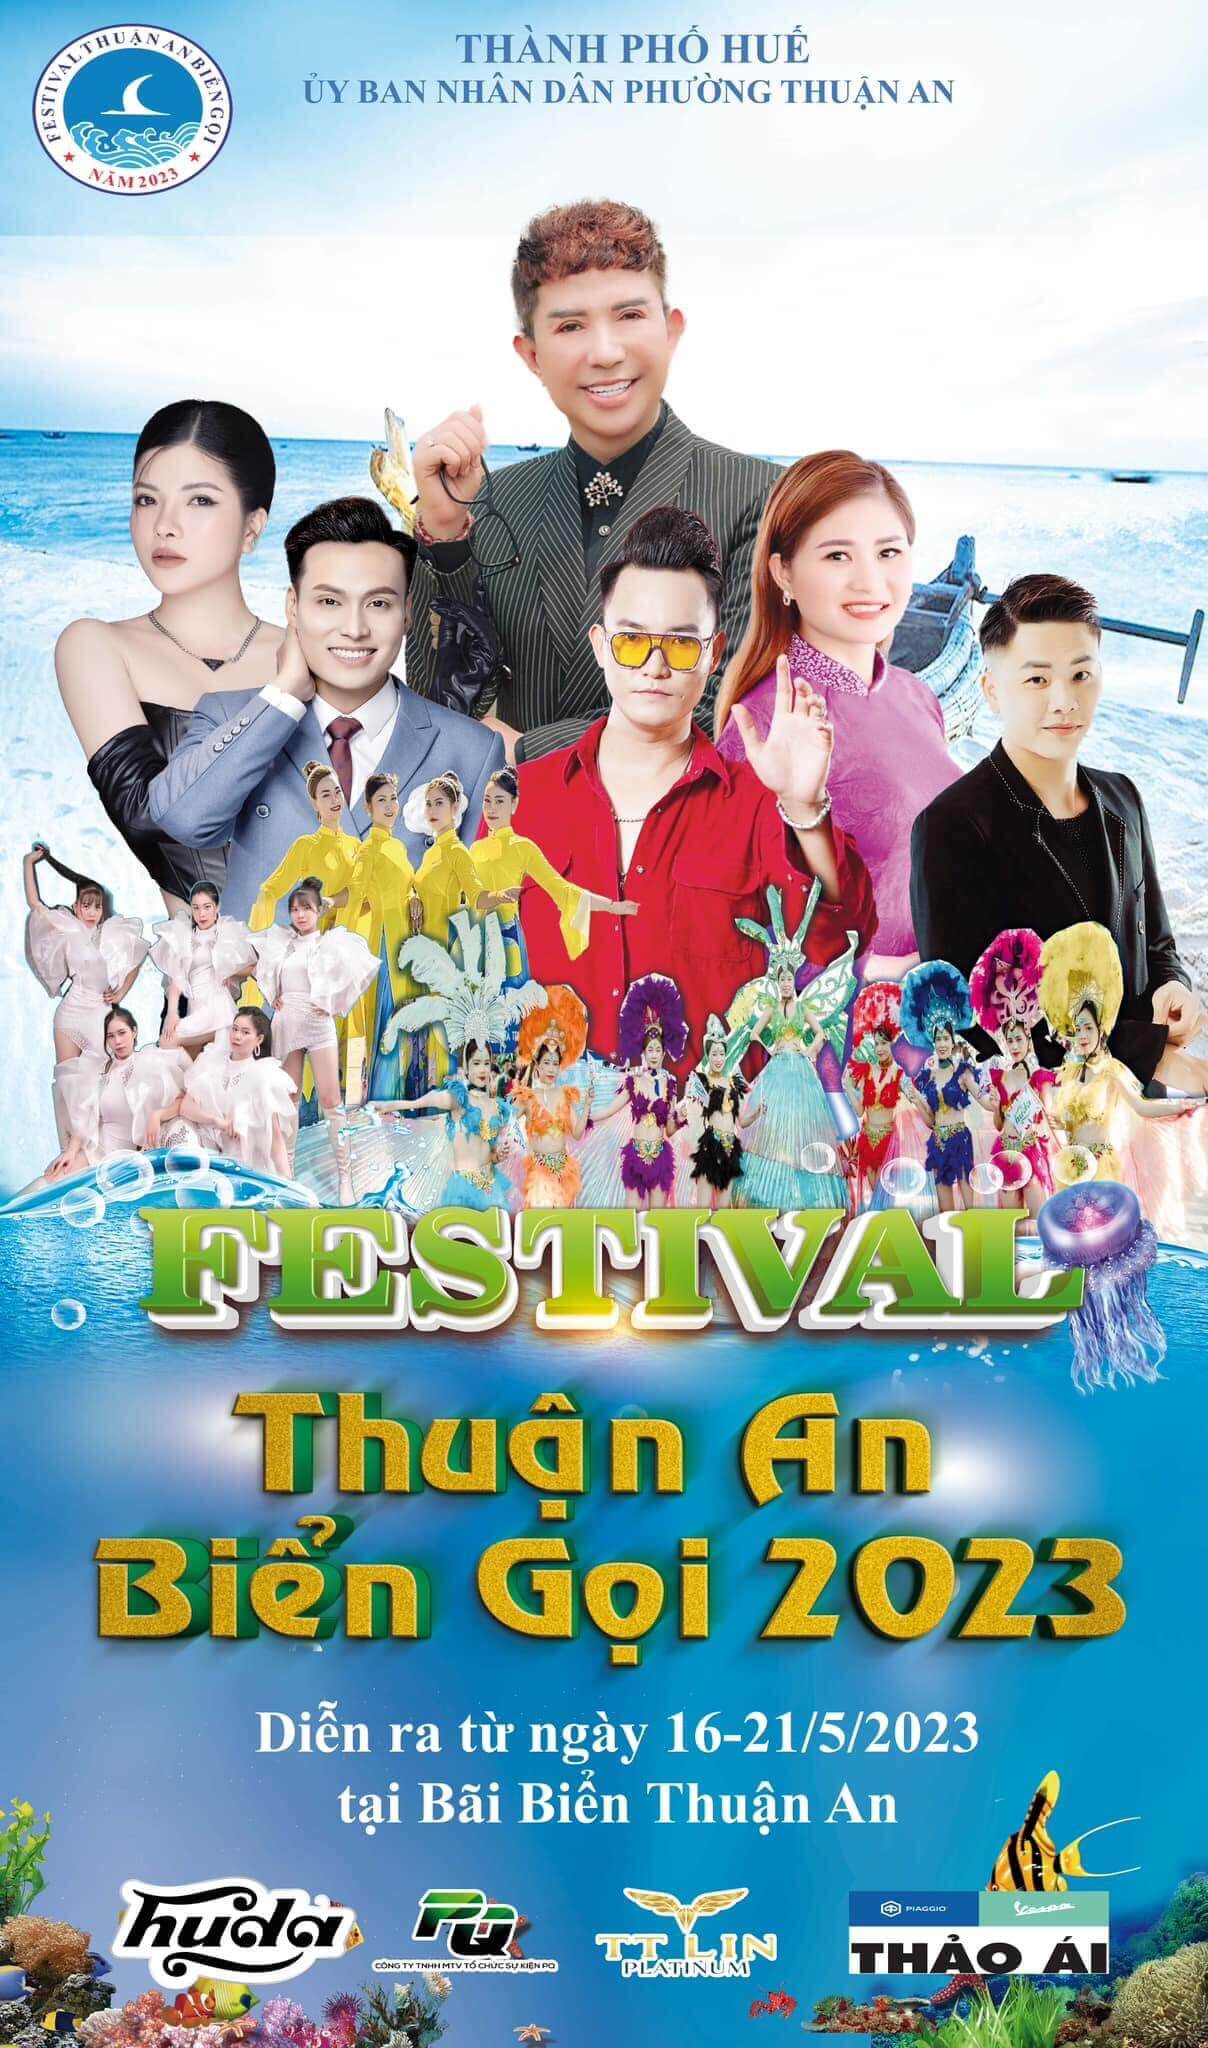 Thuận An biển gọi 2023